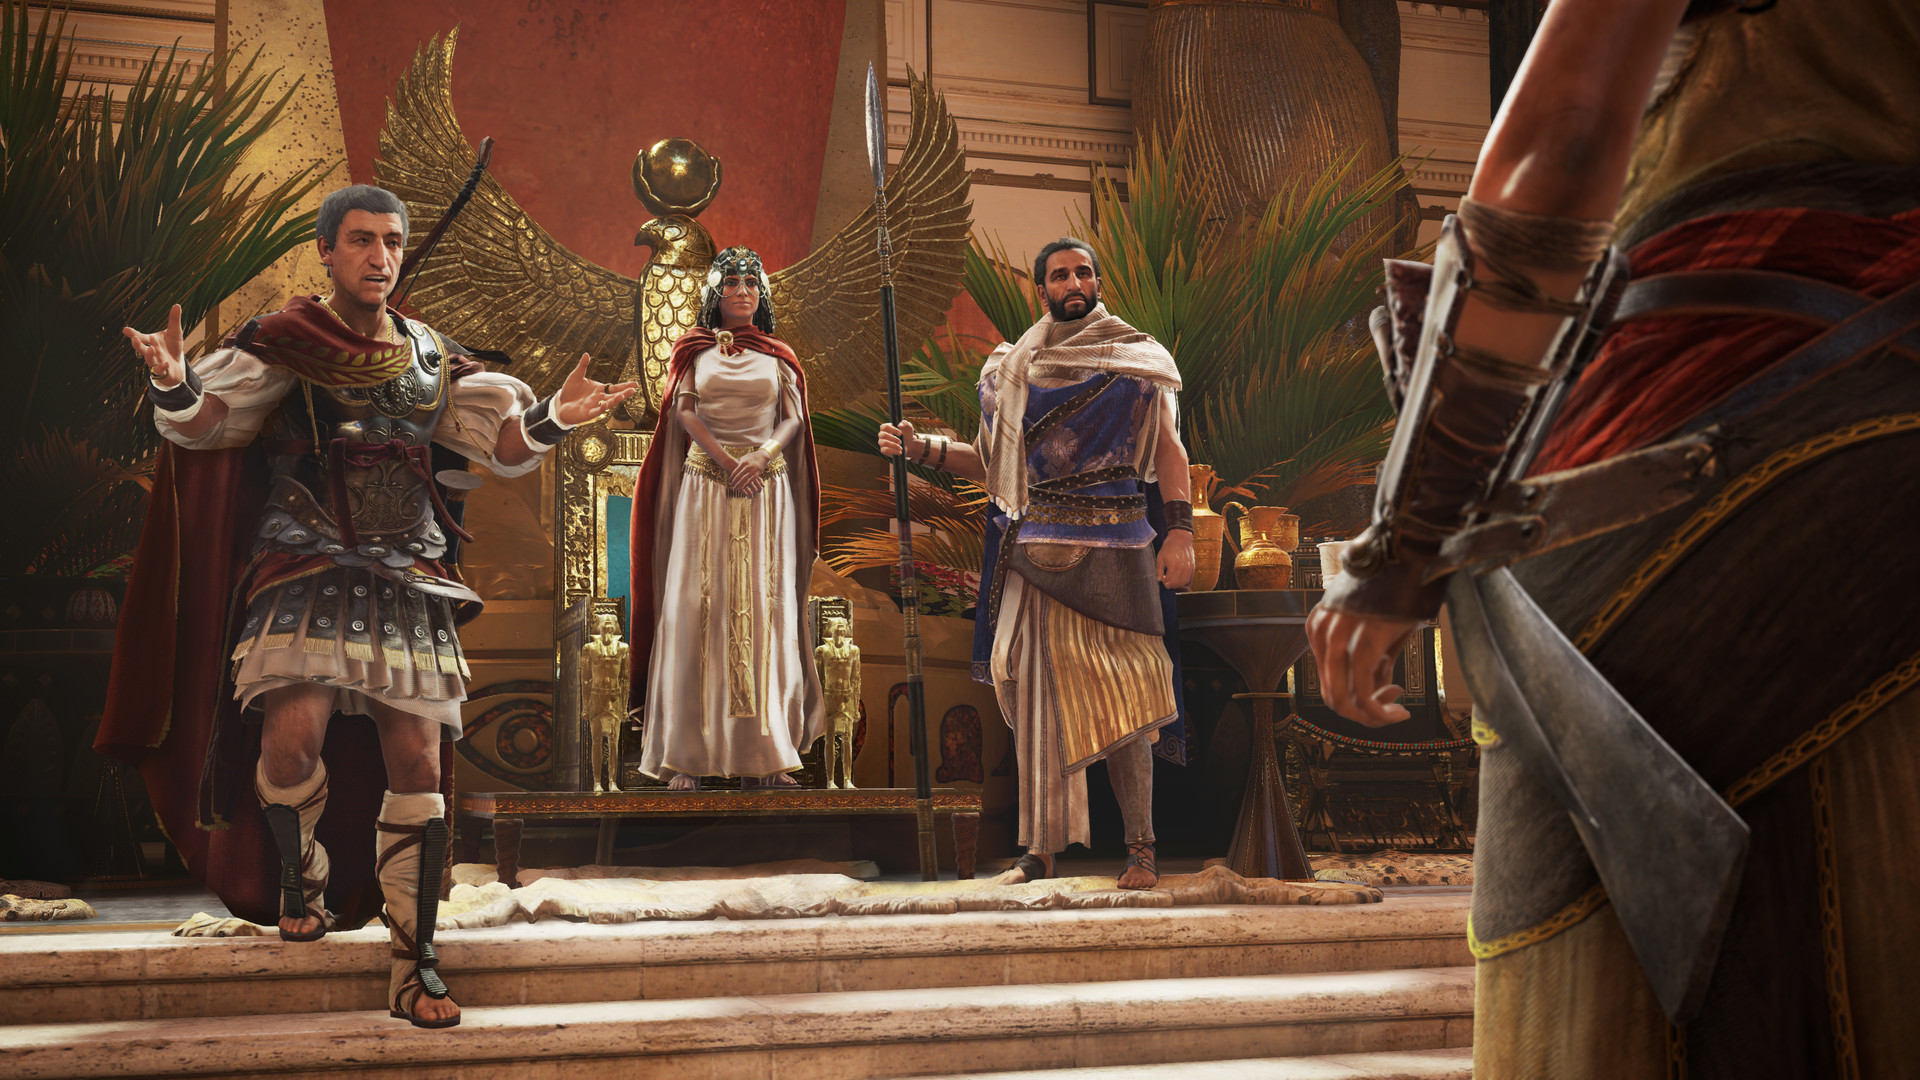 Steam Workshop::Assassins Creed Origins